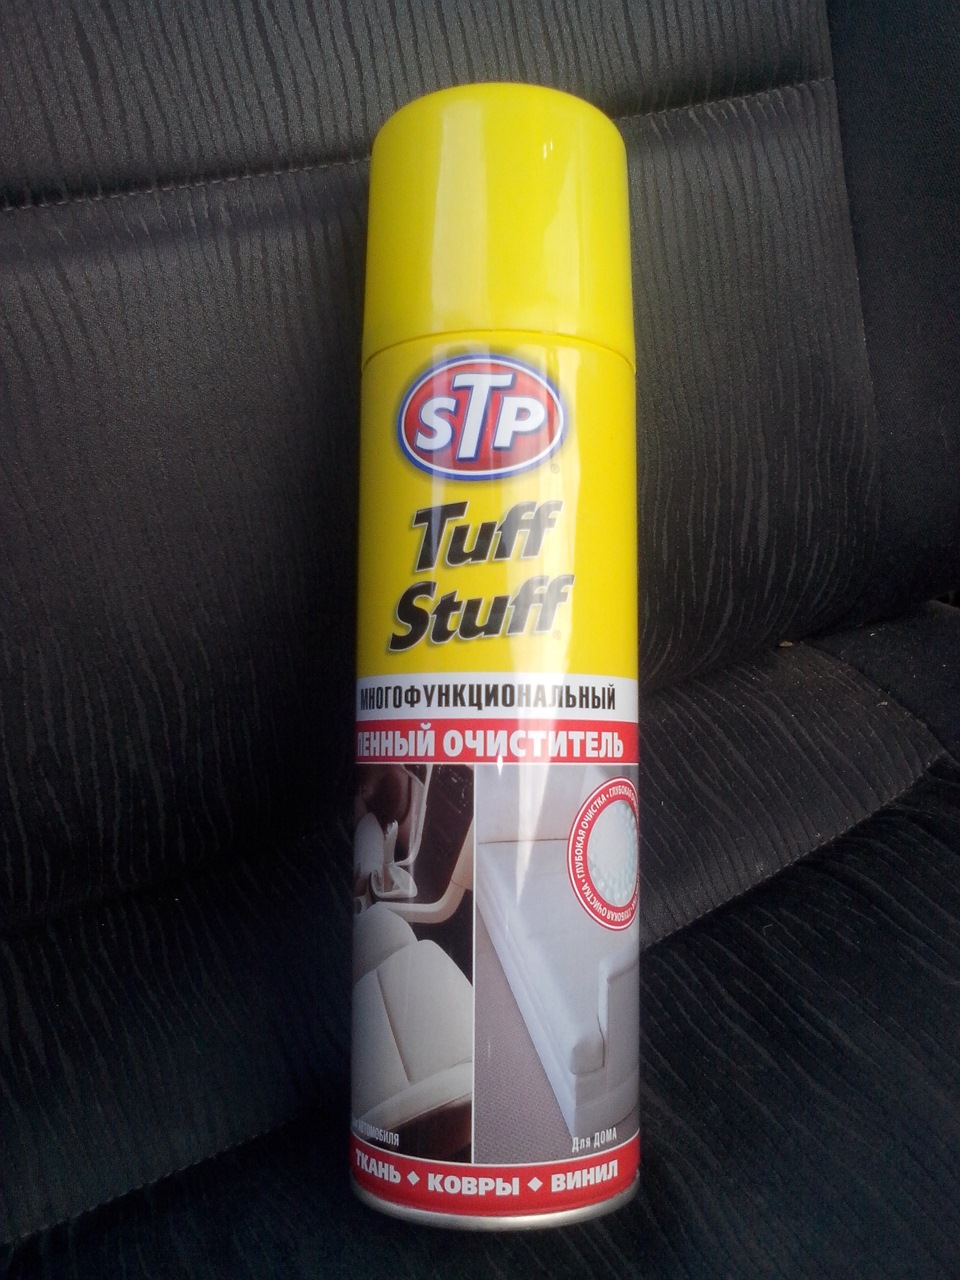 STP Tuff Stuff Многофункциональный пенный очиститель.